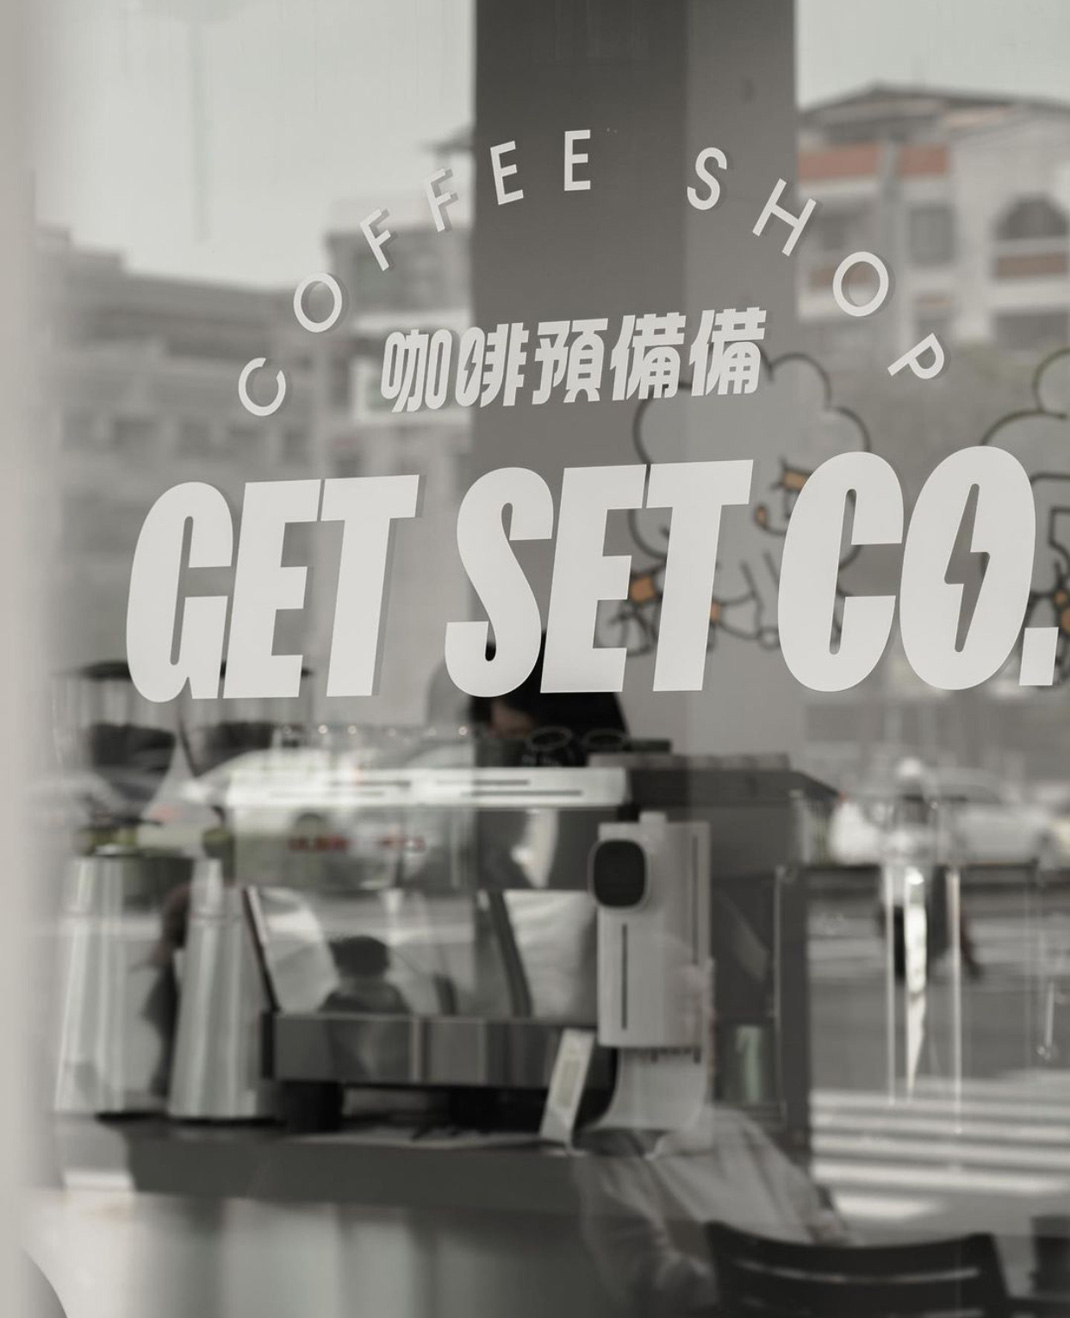 咖啡预备备 Get Set Co 台湾 高雄 咖啡馆 插画设计 手绘 logo设计 vi设计 空间设计